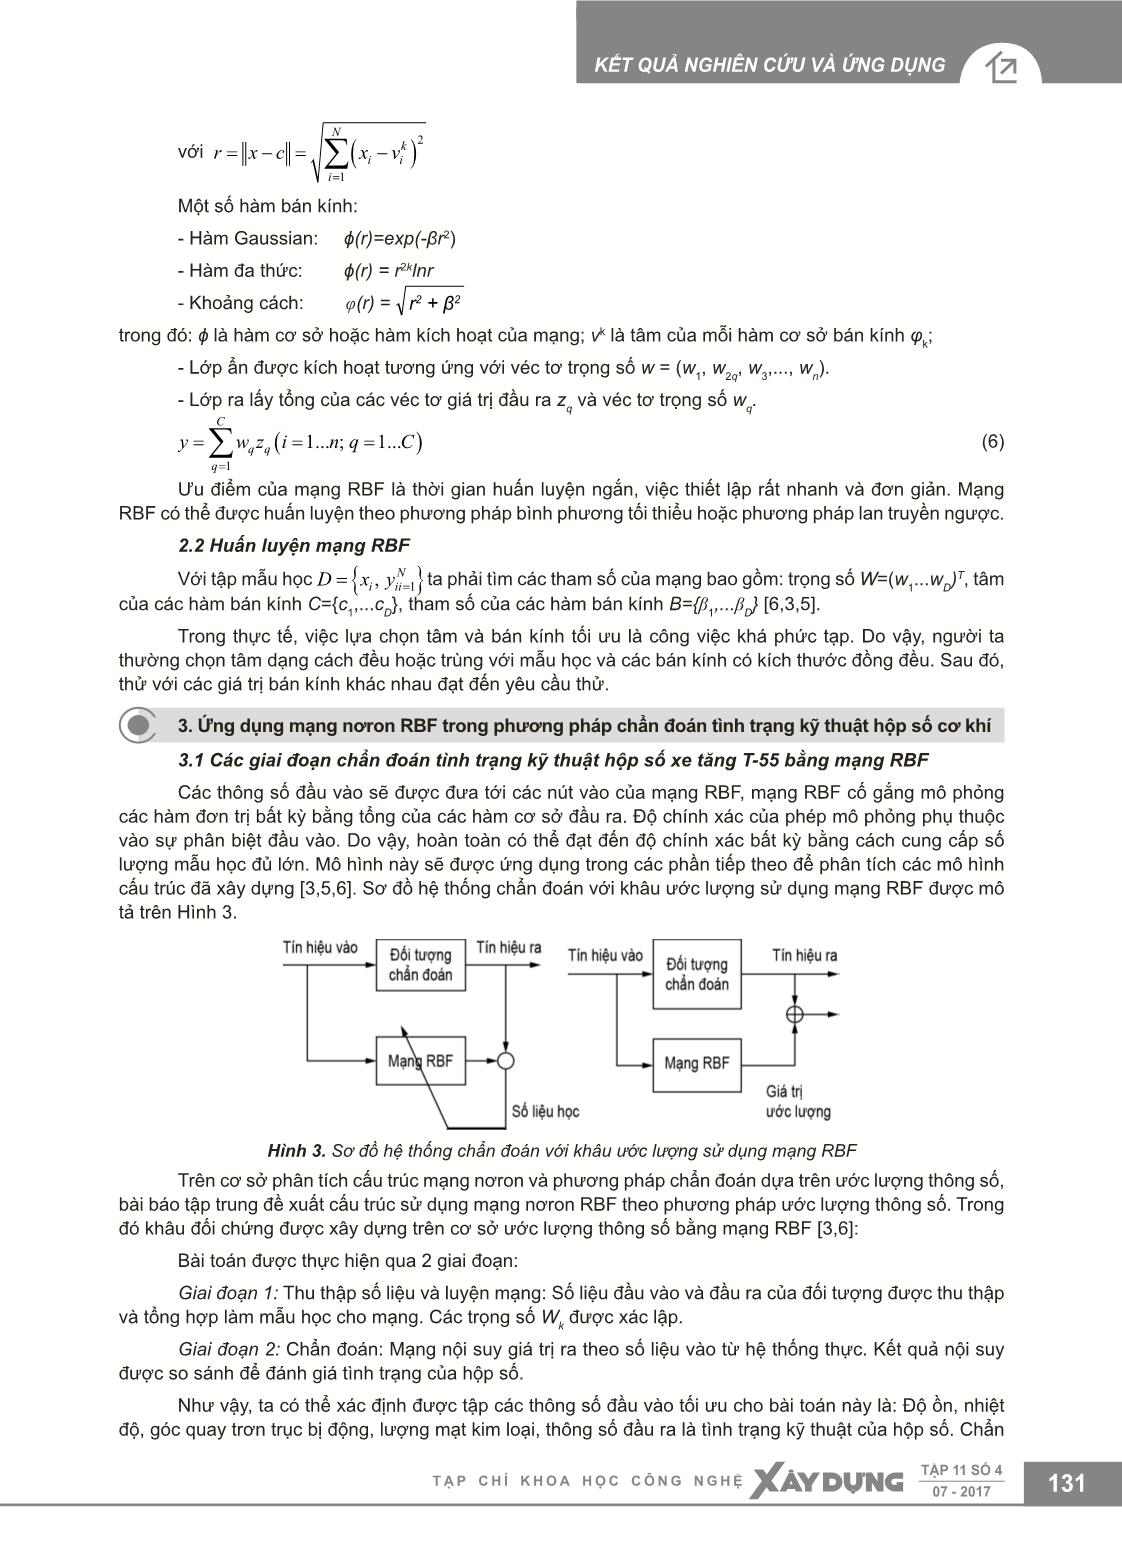 Chẩn đoán tình trạng kỹ thuật hộp số cơ khí trên cơ sở mạng nơron RBF trang 3